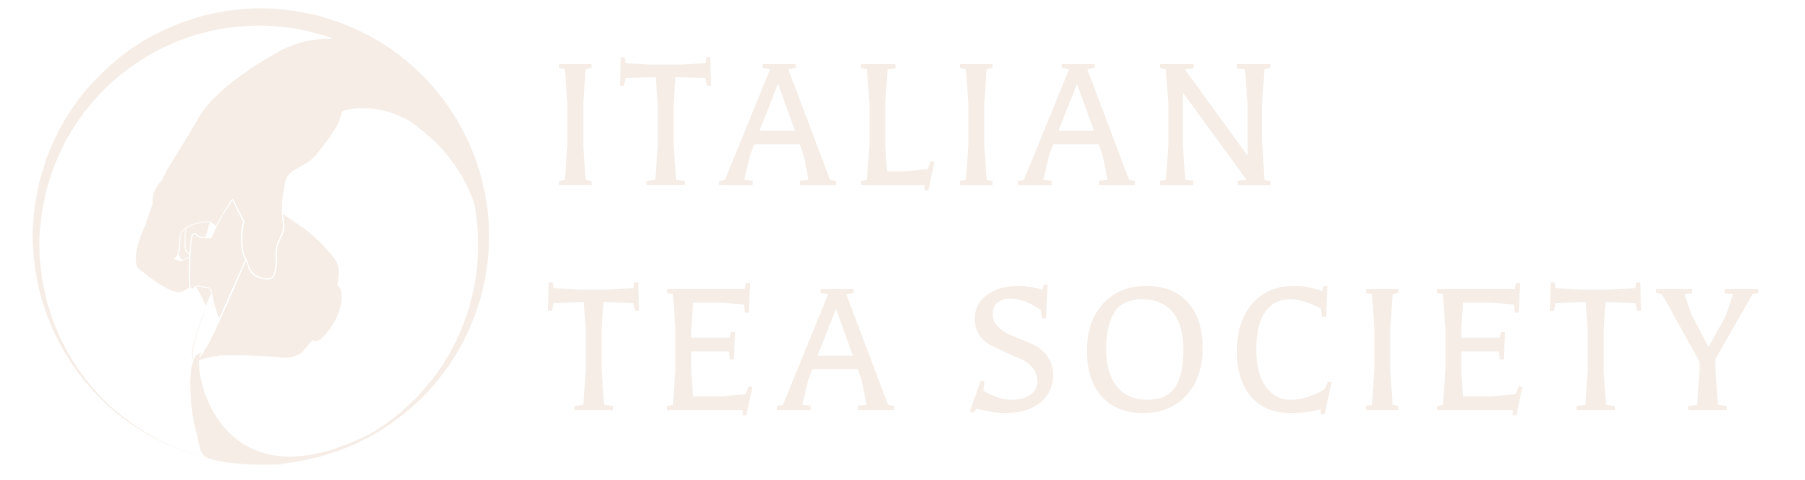 Italian Tea Society